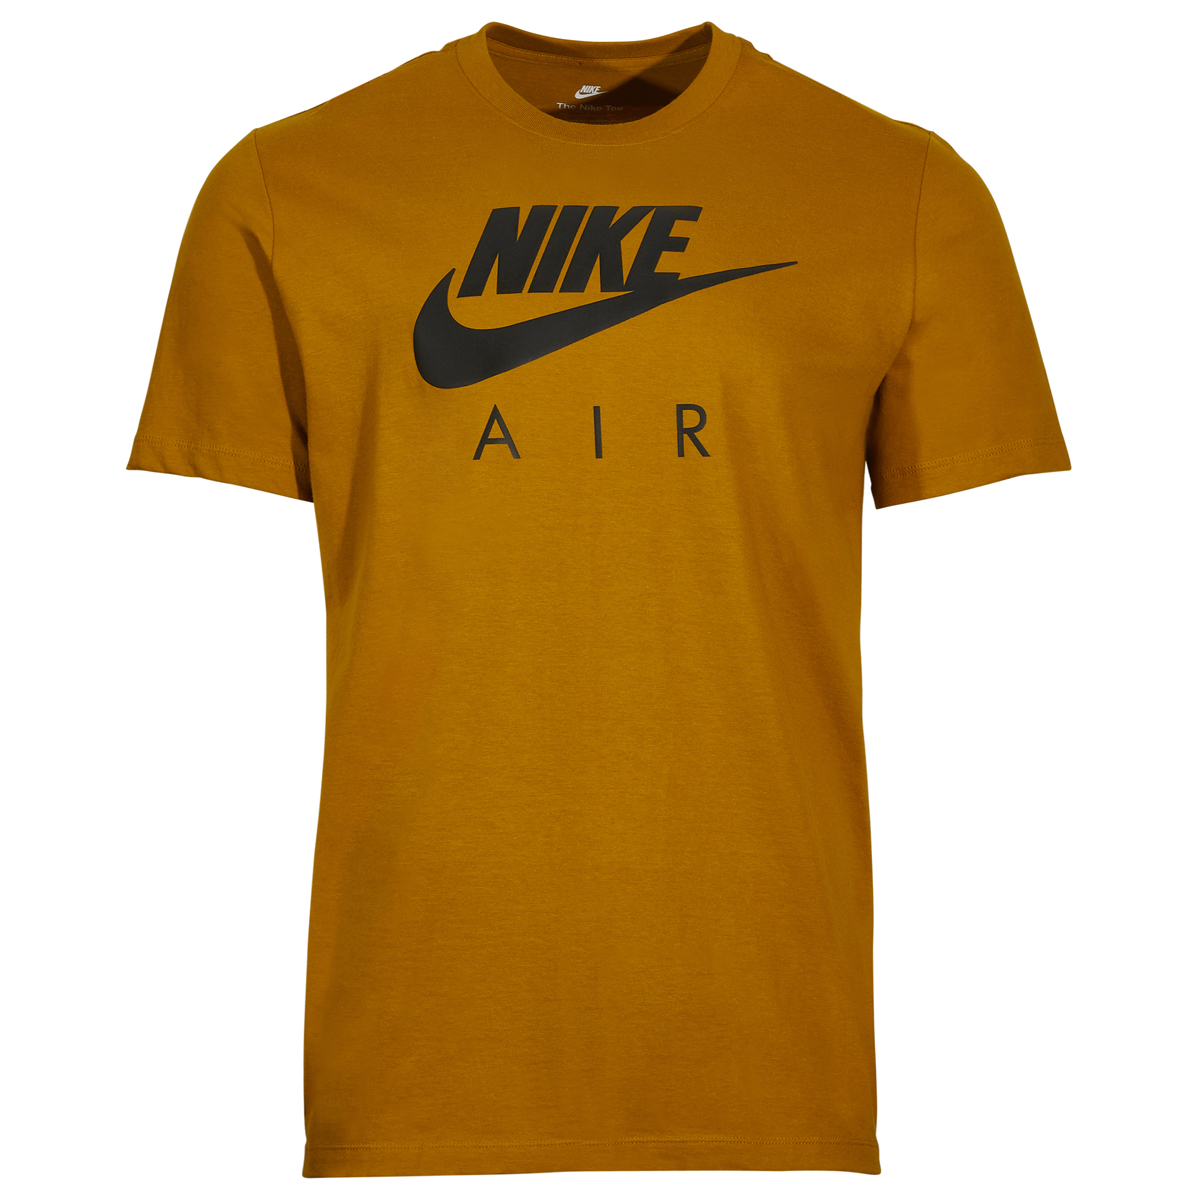 Nike Air T Shirt Wheat